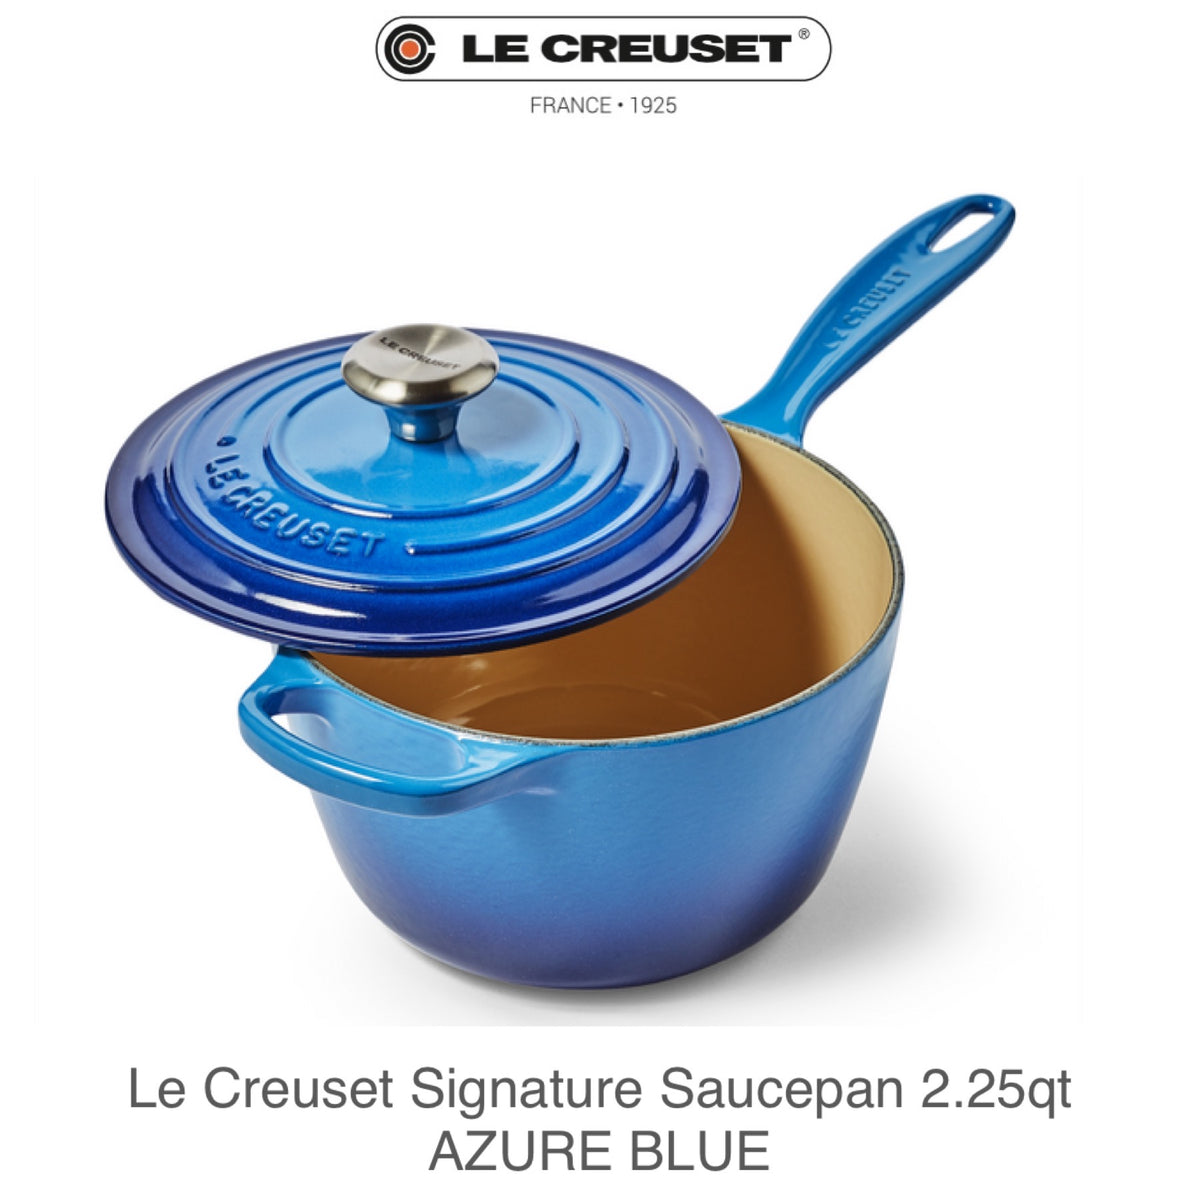 New Le Creuset blue: Azure